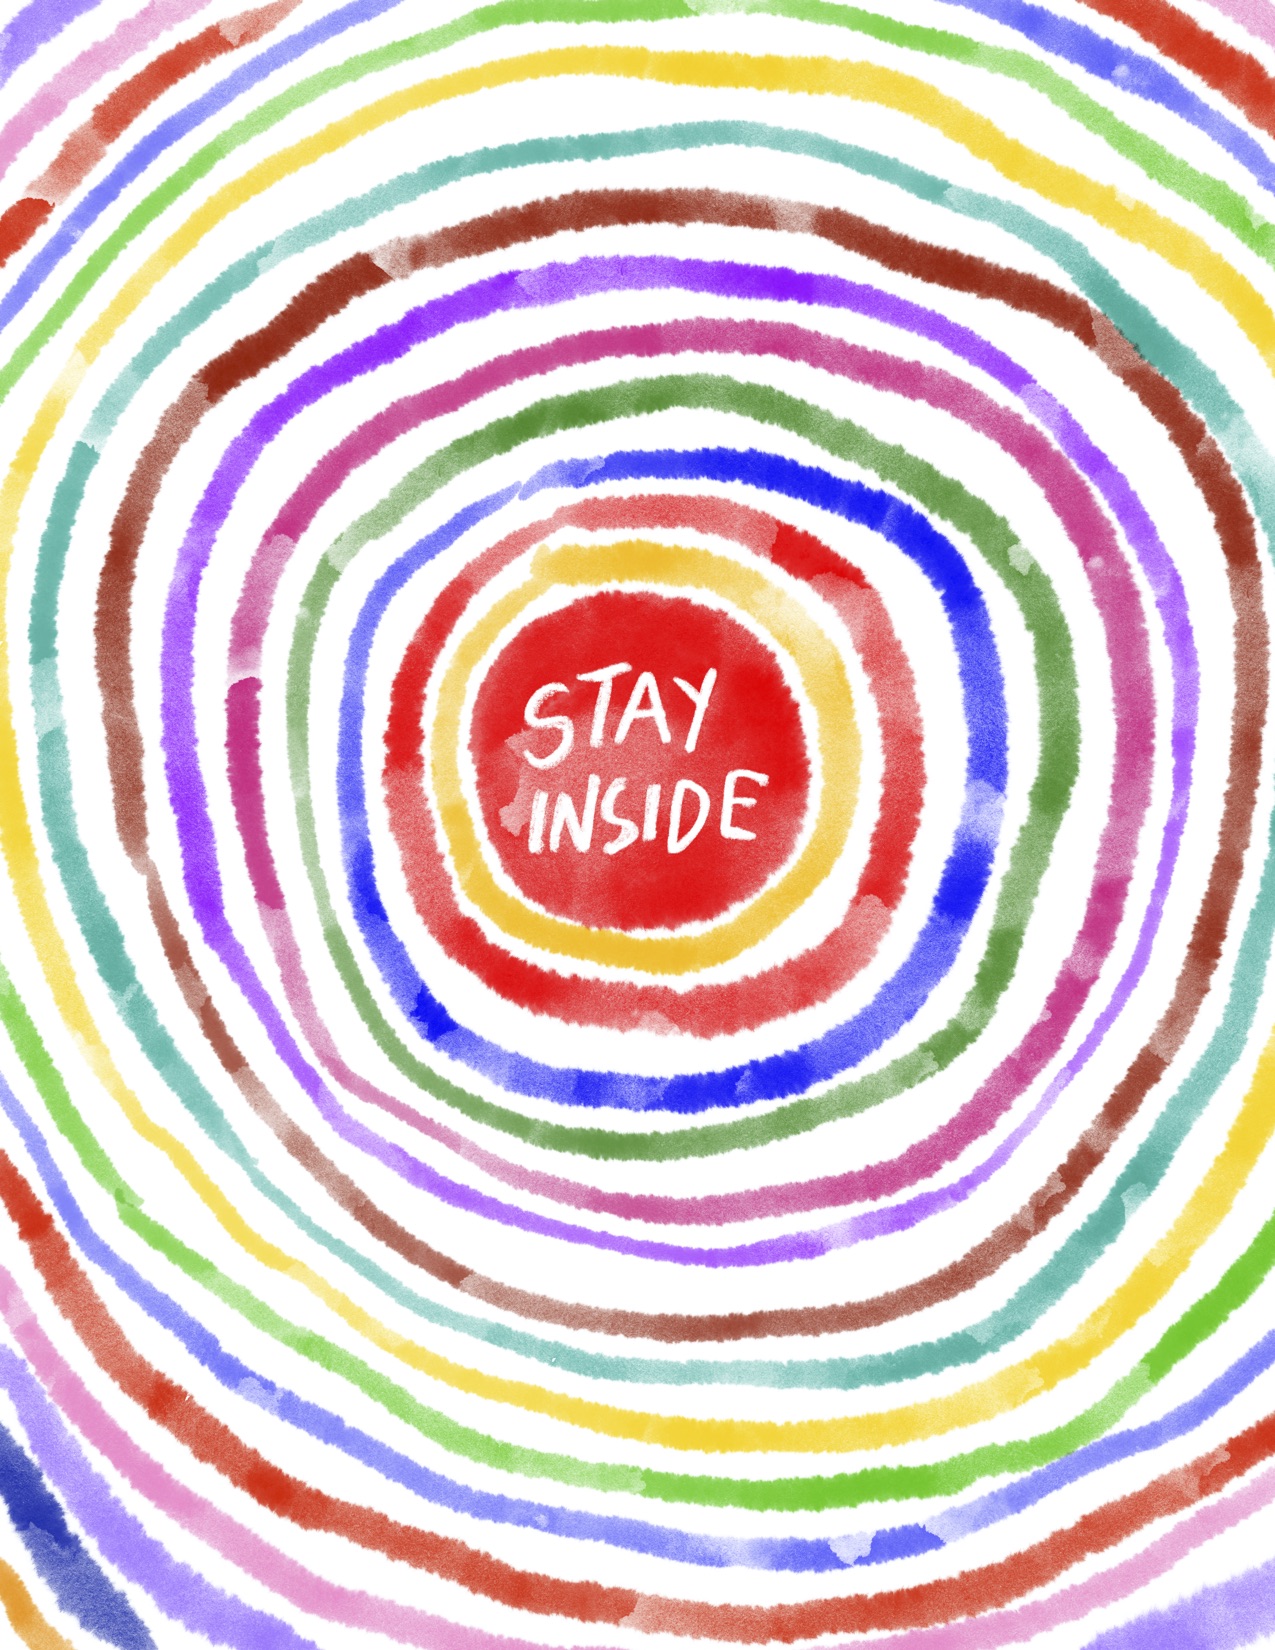 Stay Inside